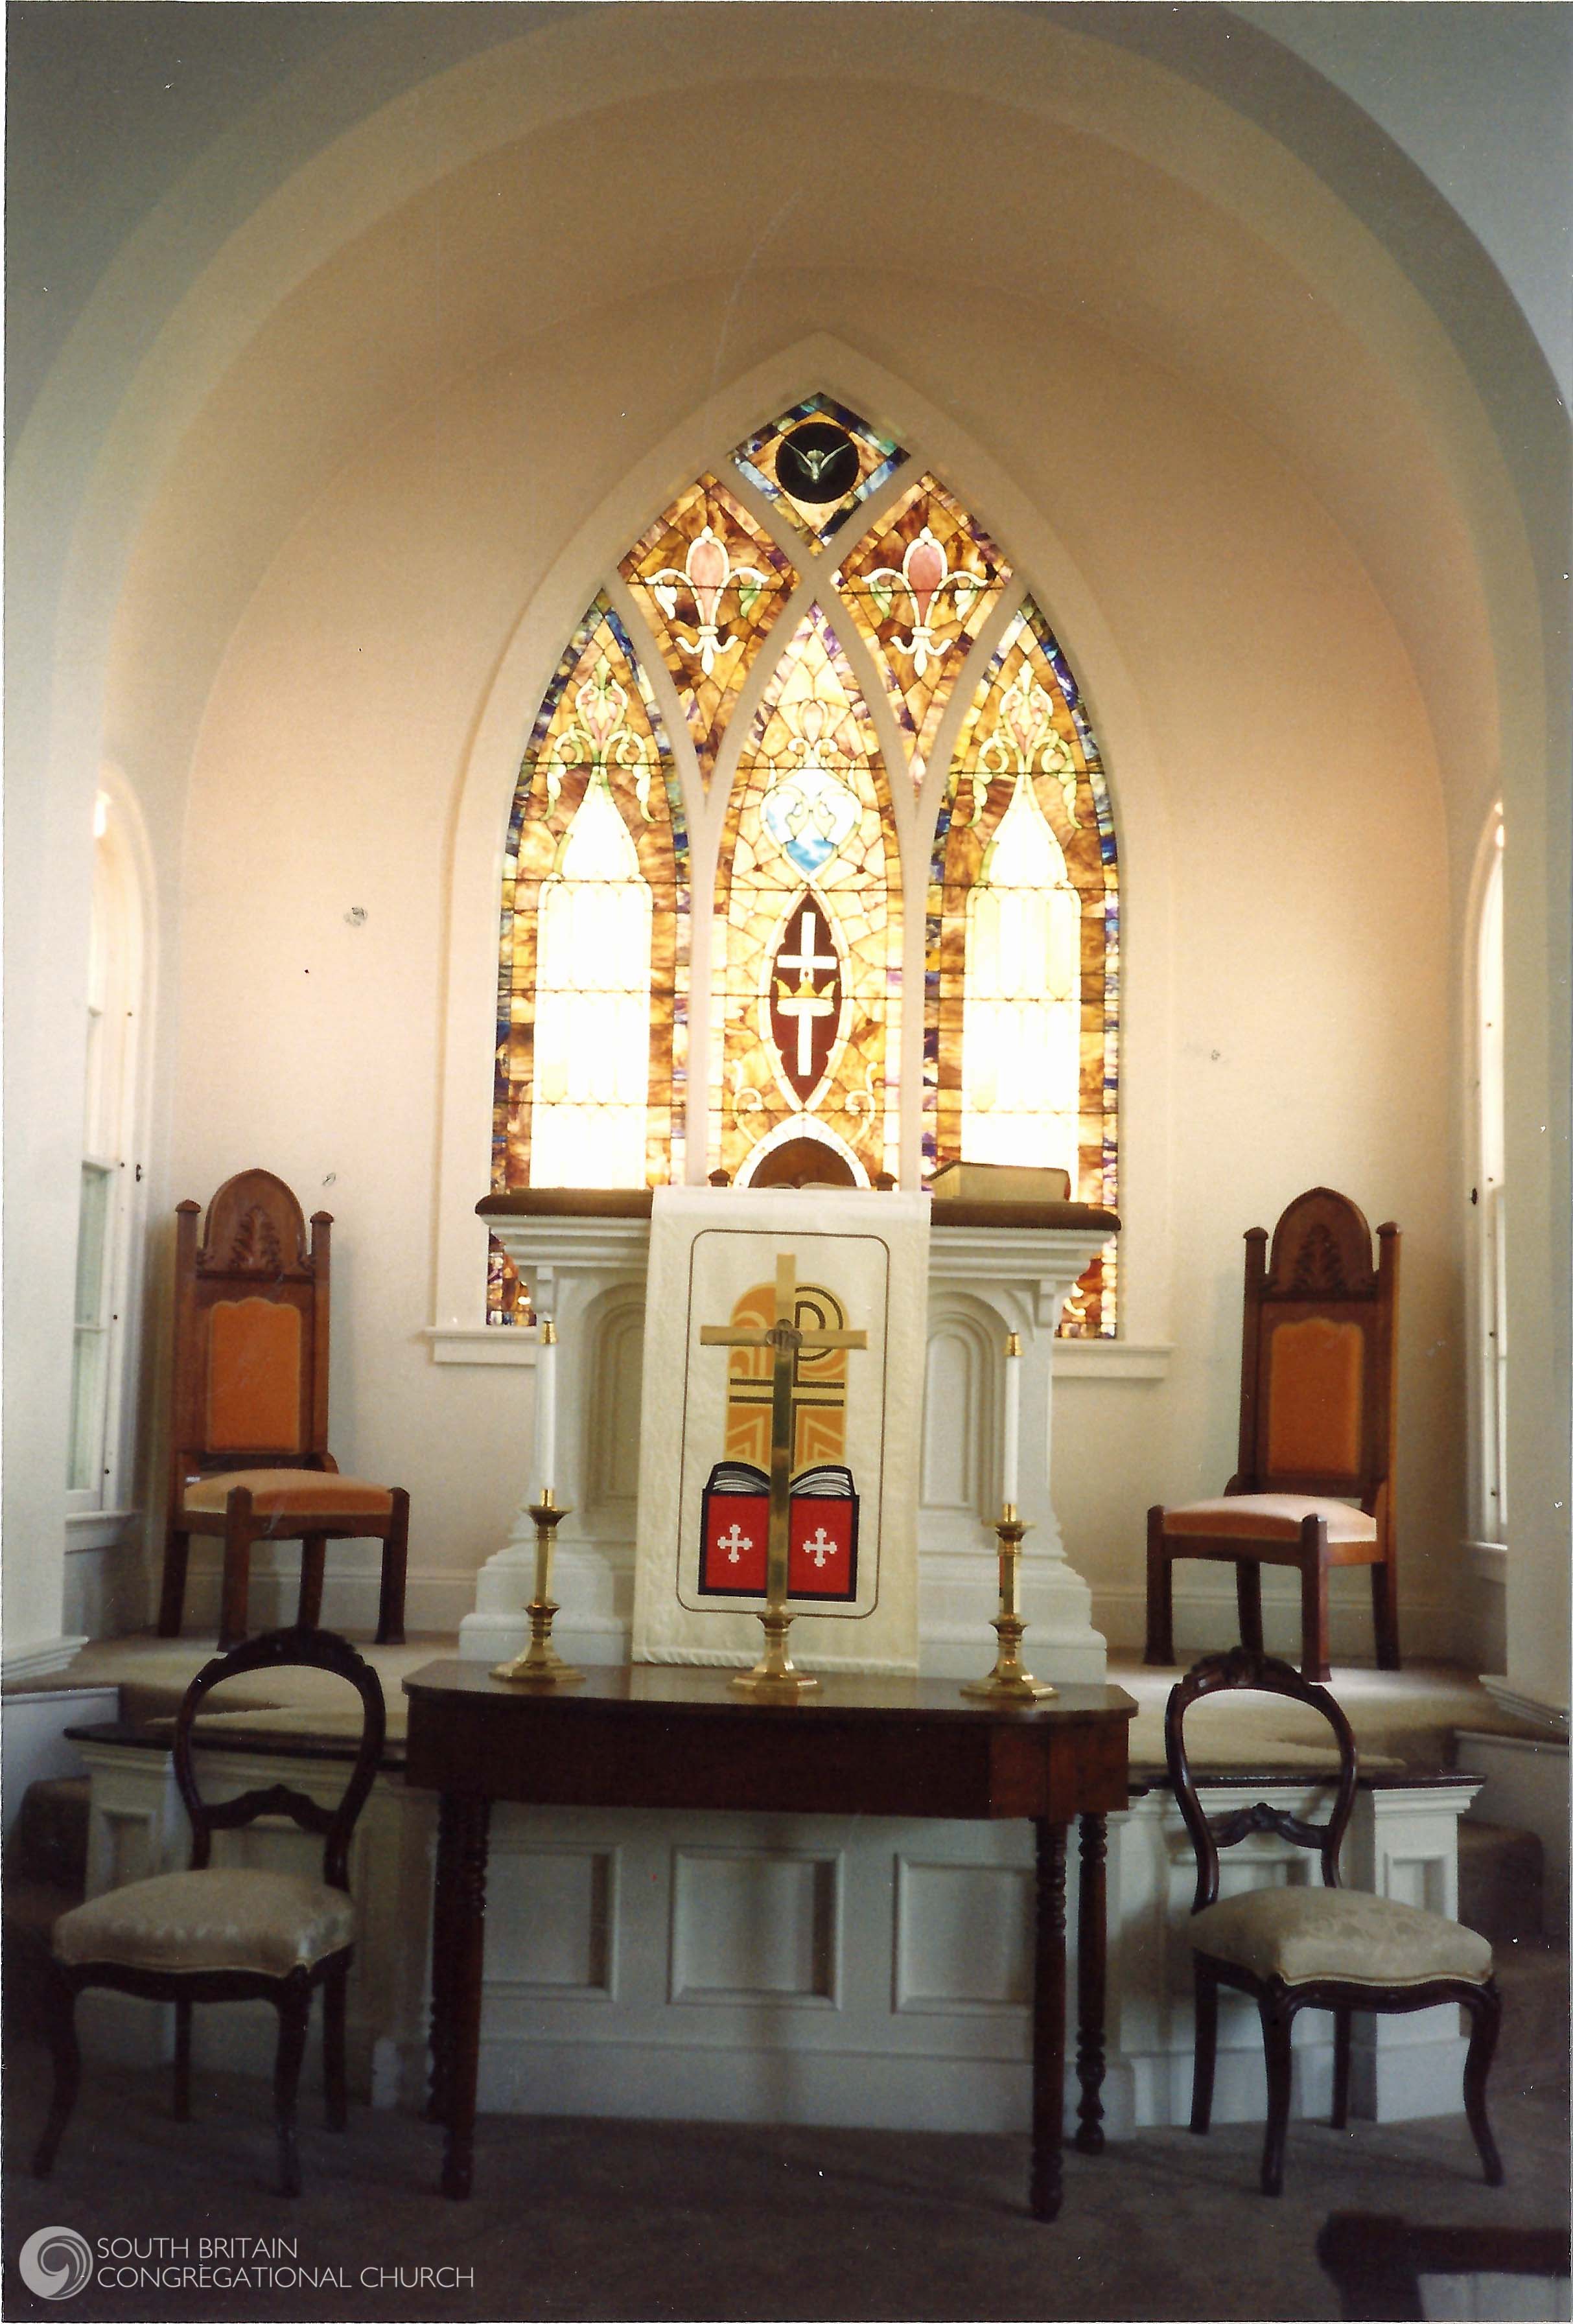 Sanctuary Pulpit